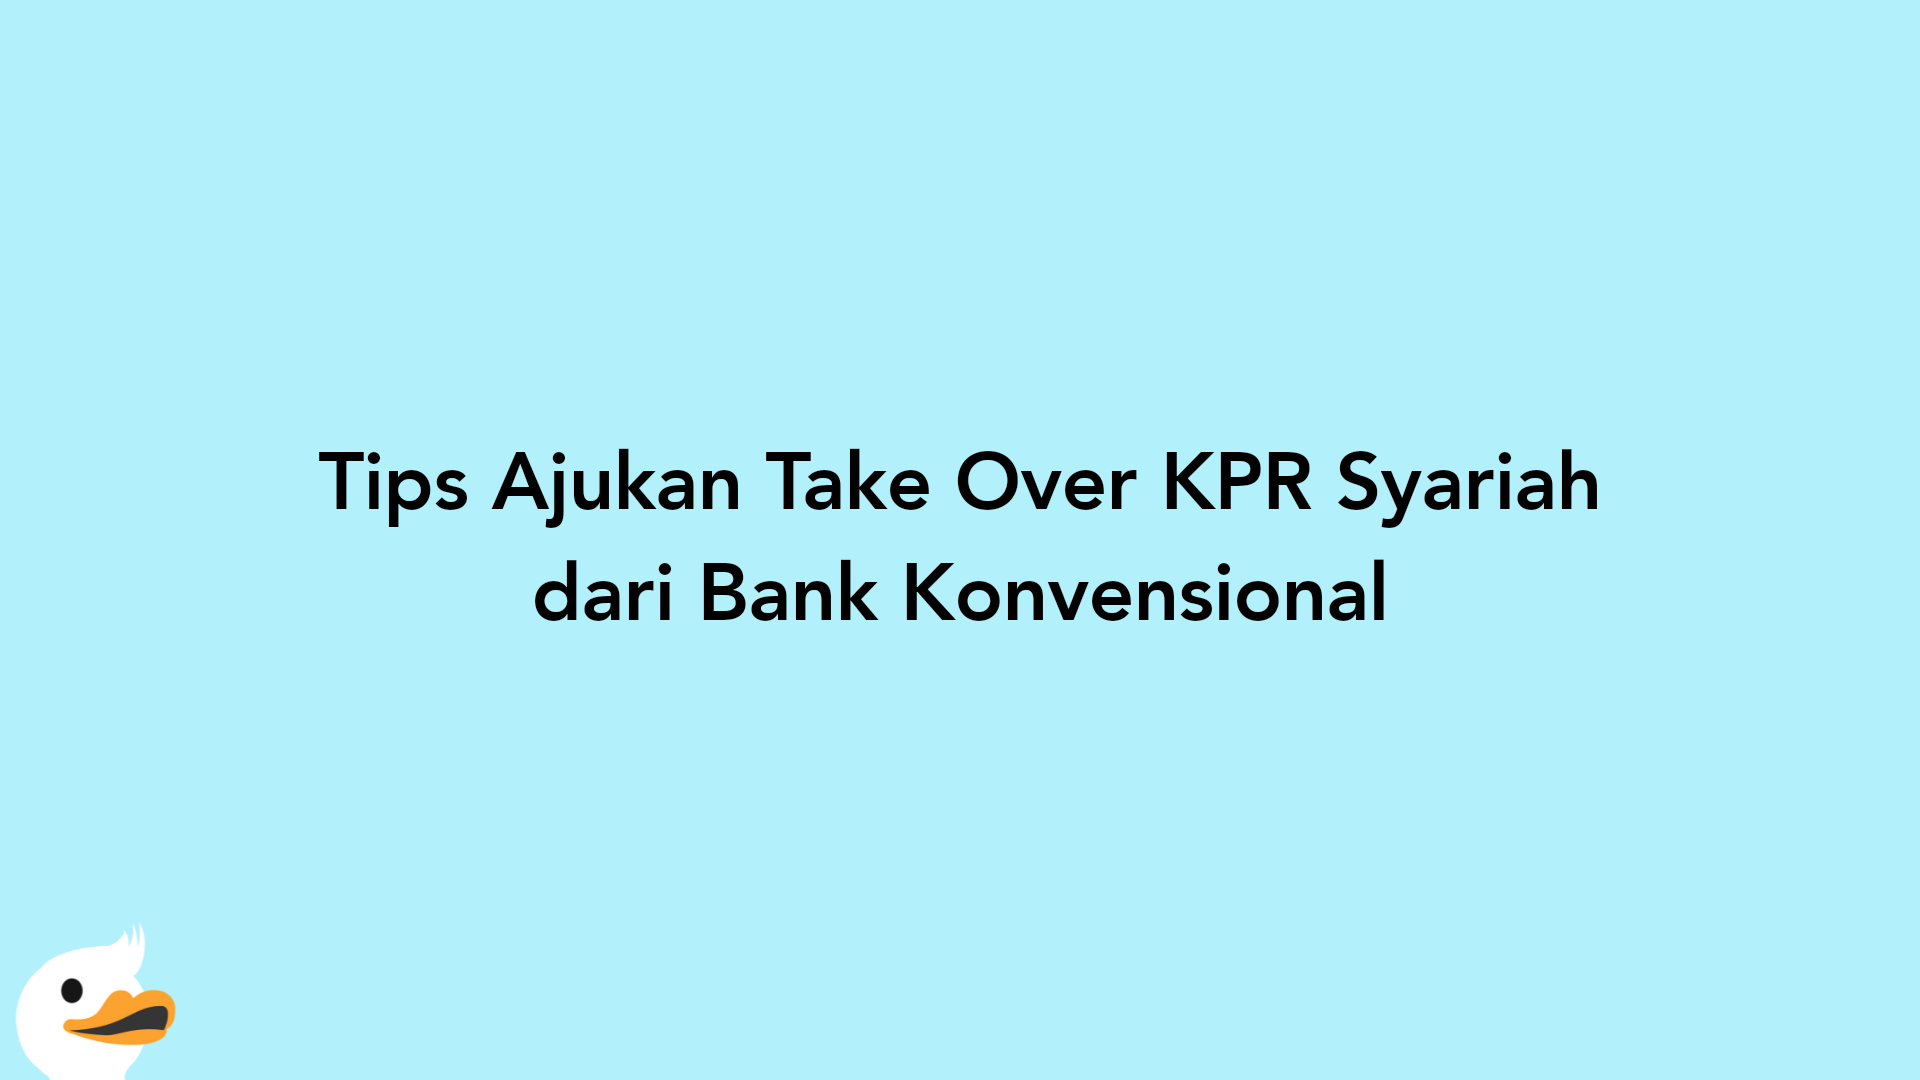 Tips Ajukan Take Over KPR Syariah dari Bank Konvensional